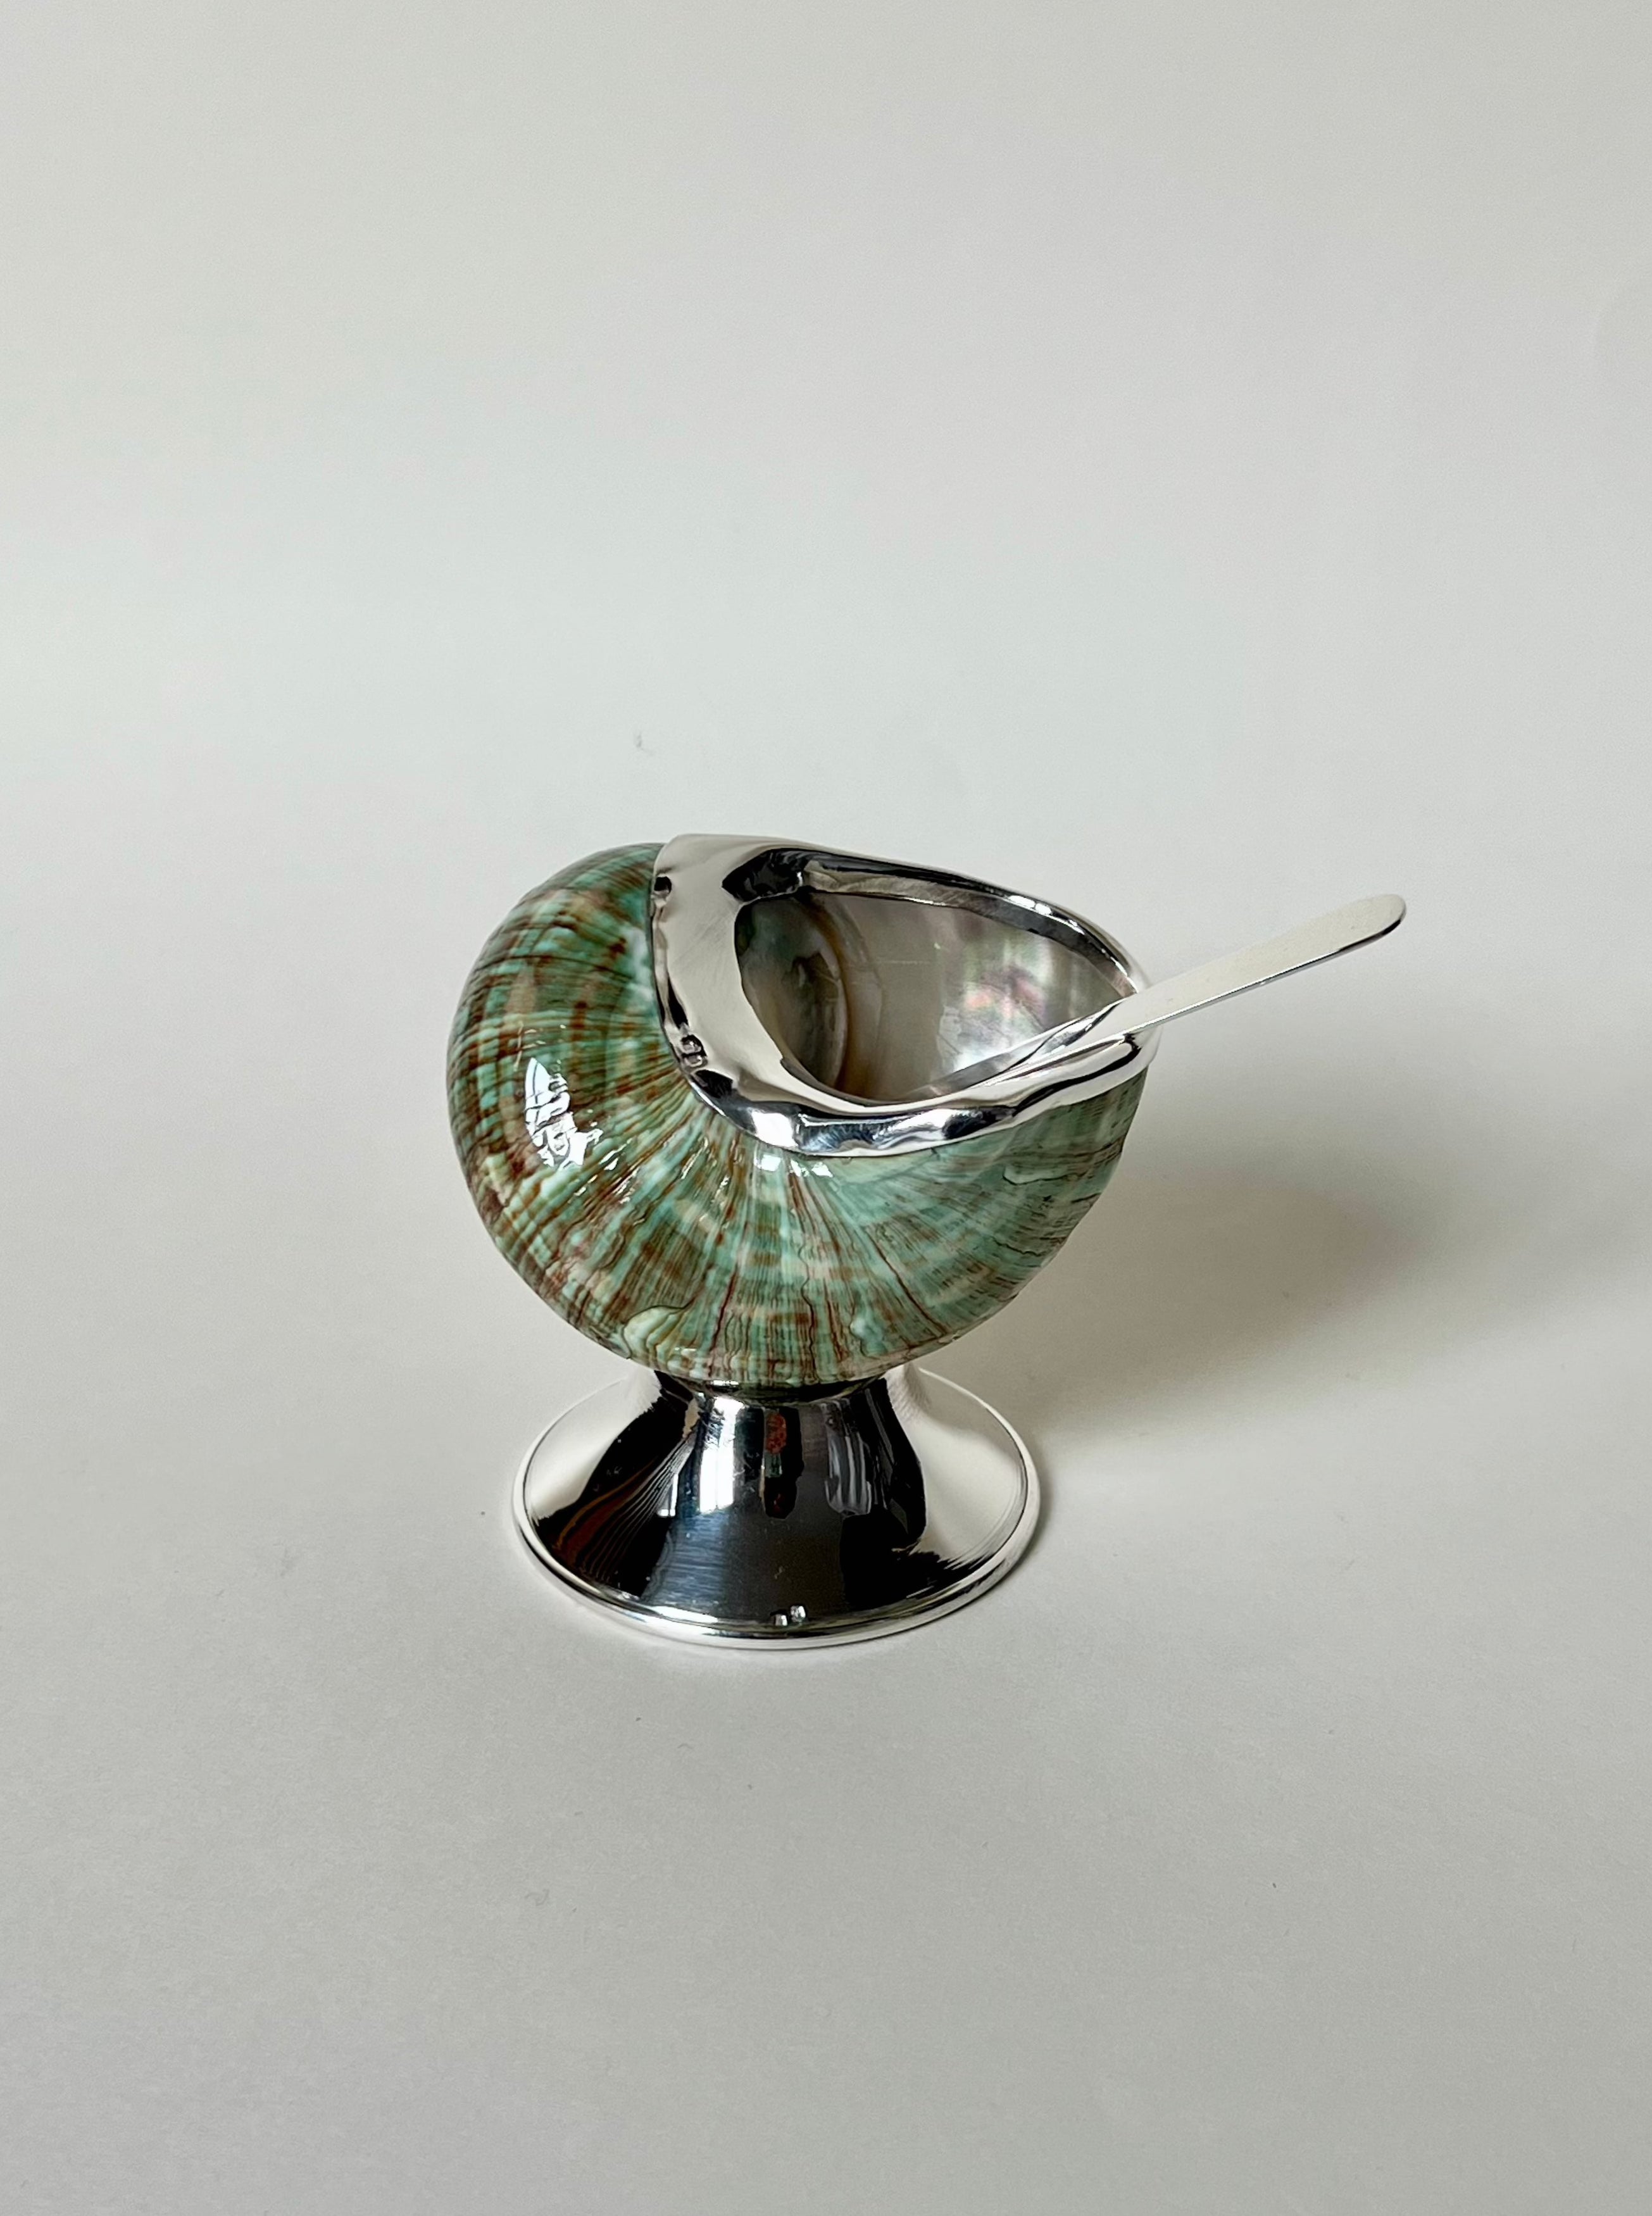 Exquisite Jade Shell Sugar Bowl made of high-quality ceramic material